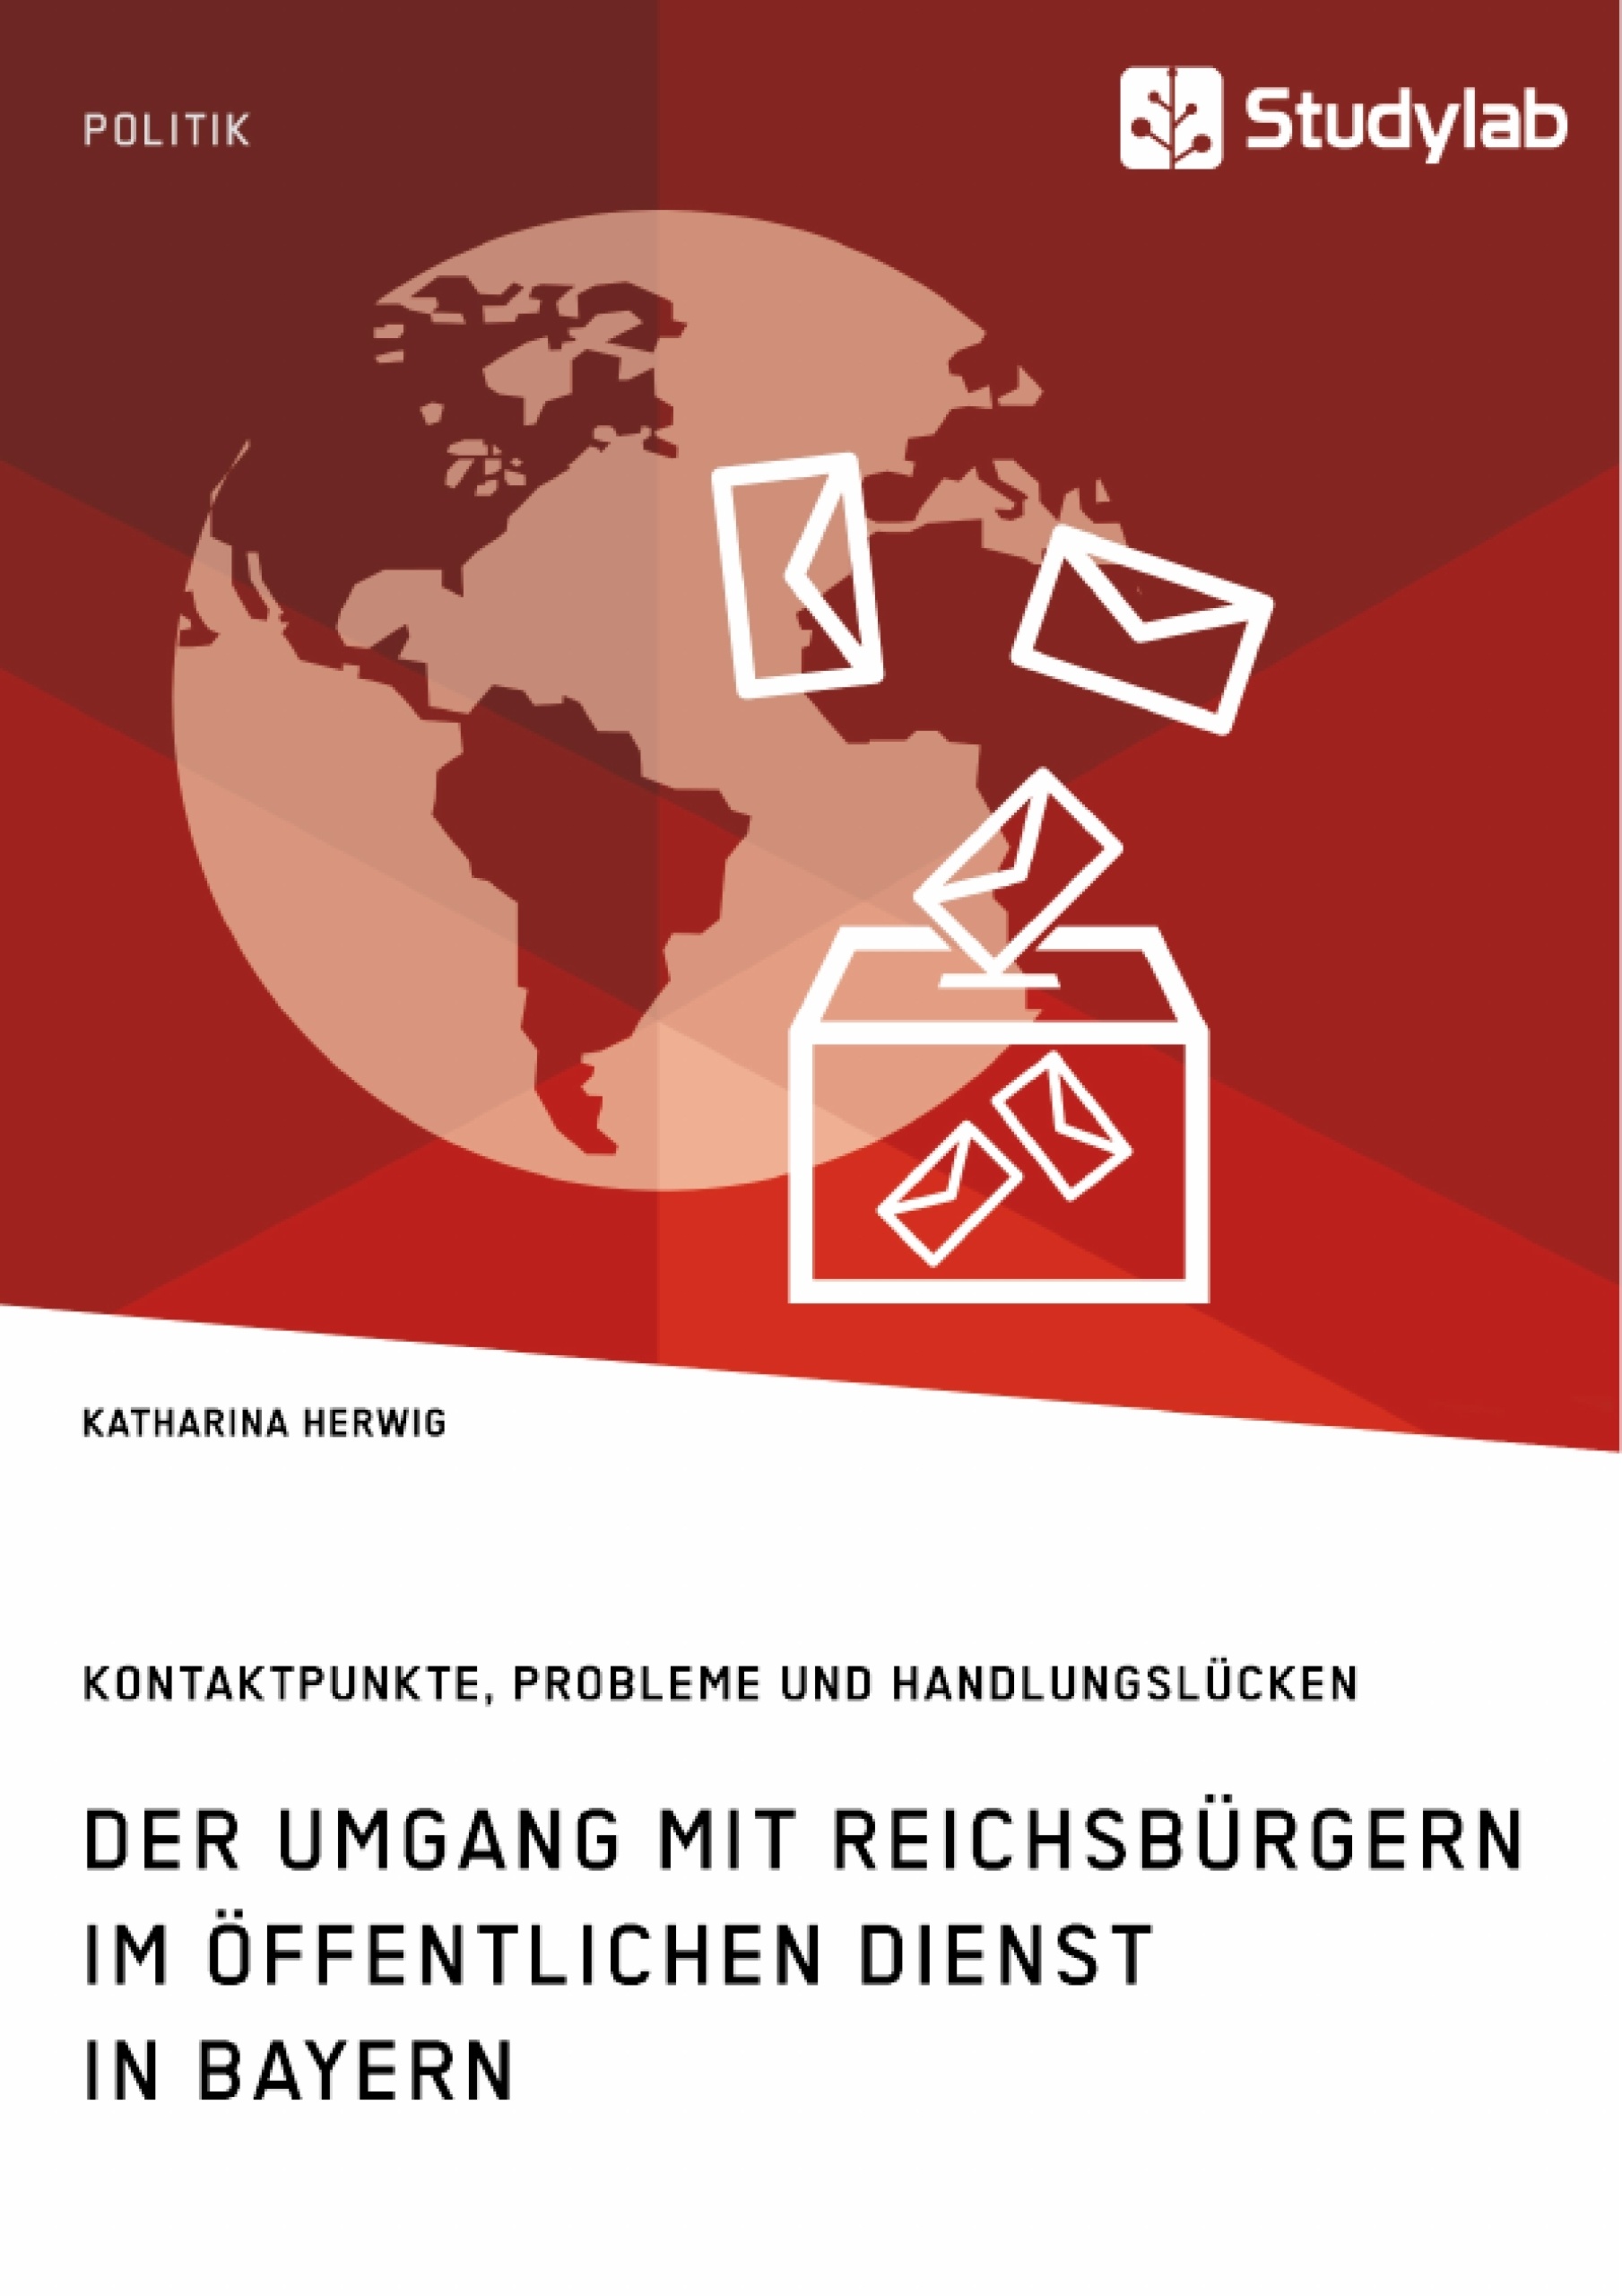 Titre: Der Umgang mit Reichsbürgern im öffentlichen Dienst in Bayern. Kontaktpunkte, Probleme und Handlungslücken